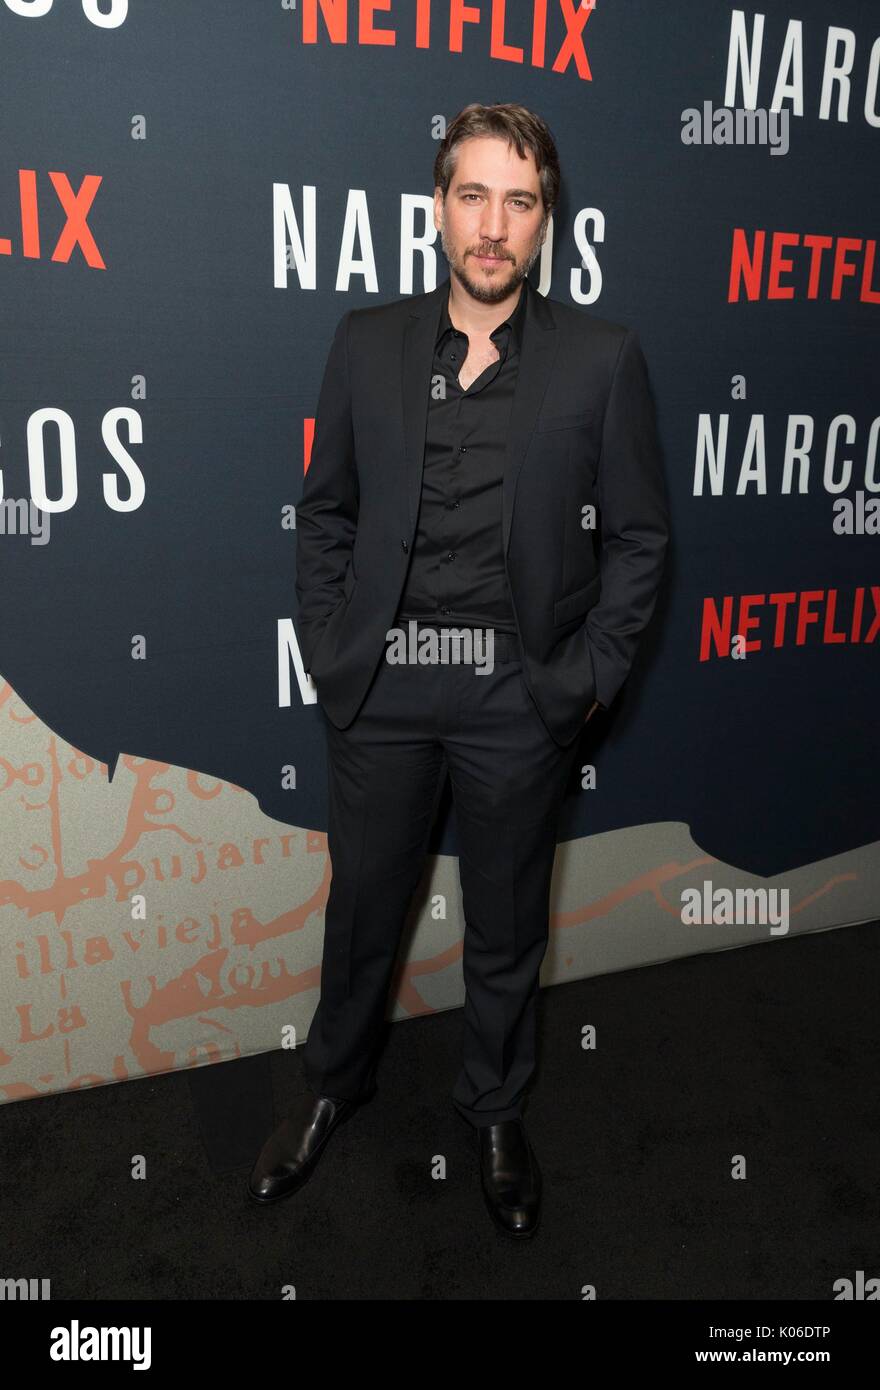 Nueva York, NY, EUA. 21 Aug, 2017. Alberto Ammann en la terminal de  llegadas de NARCOS Premiere en Netflix, AMC Loews Lincoln Square, en Nueva  York, NY el 21 de agosto de